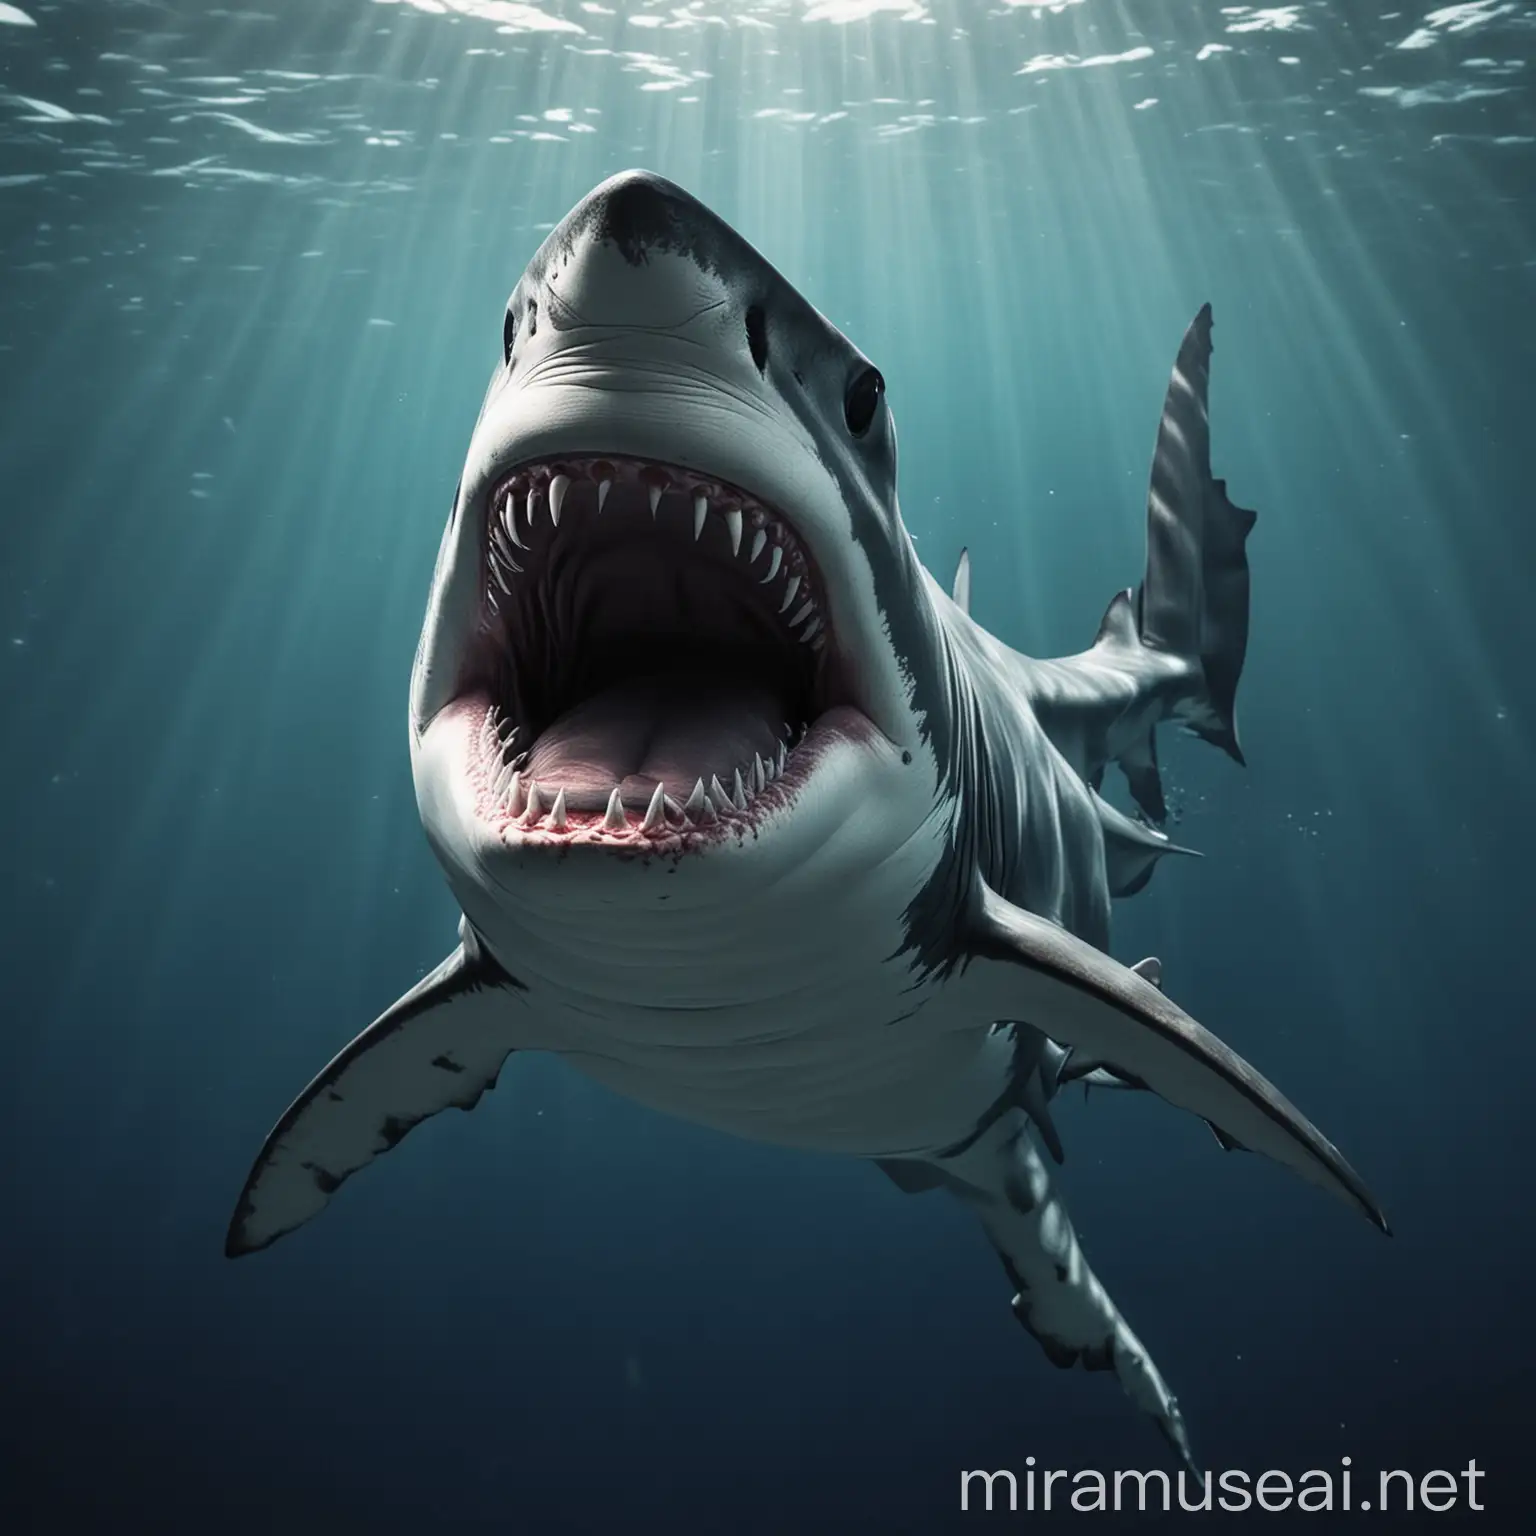 Ocean Sunset Scene with Shark Removed for YouTube Thumbnail